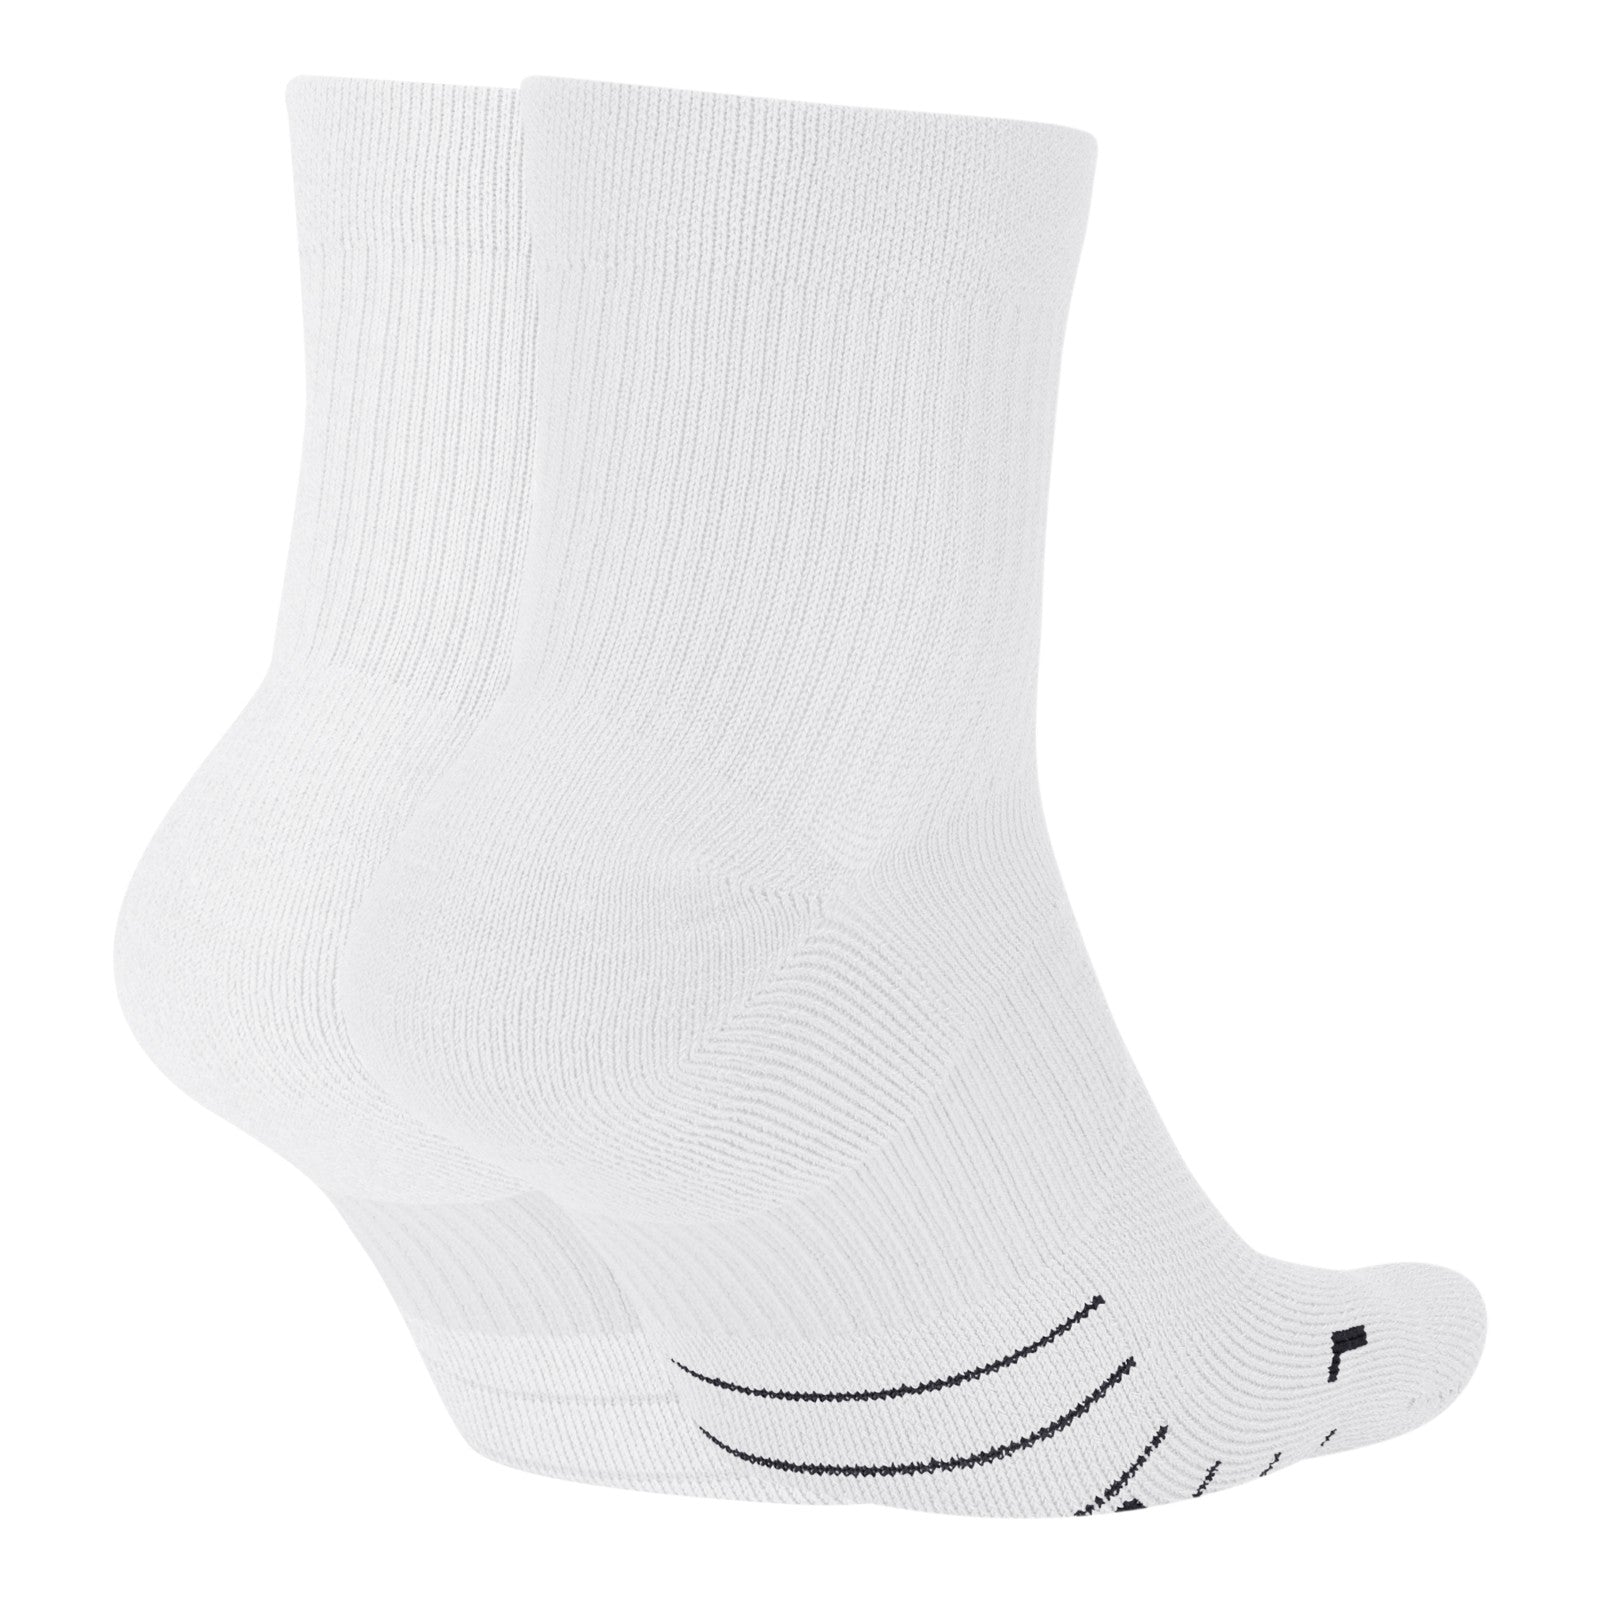 Multiplier Running Ankle Socks (2 Pair) SX7556-100